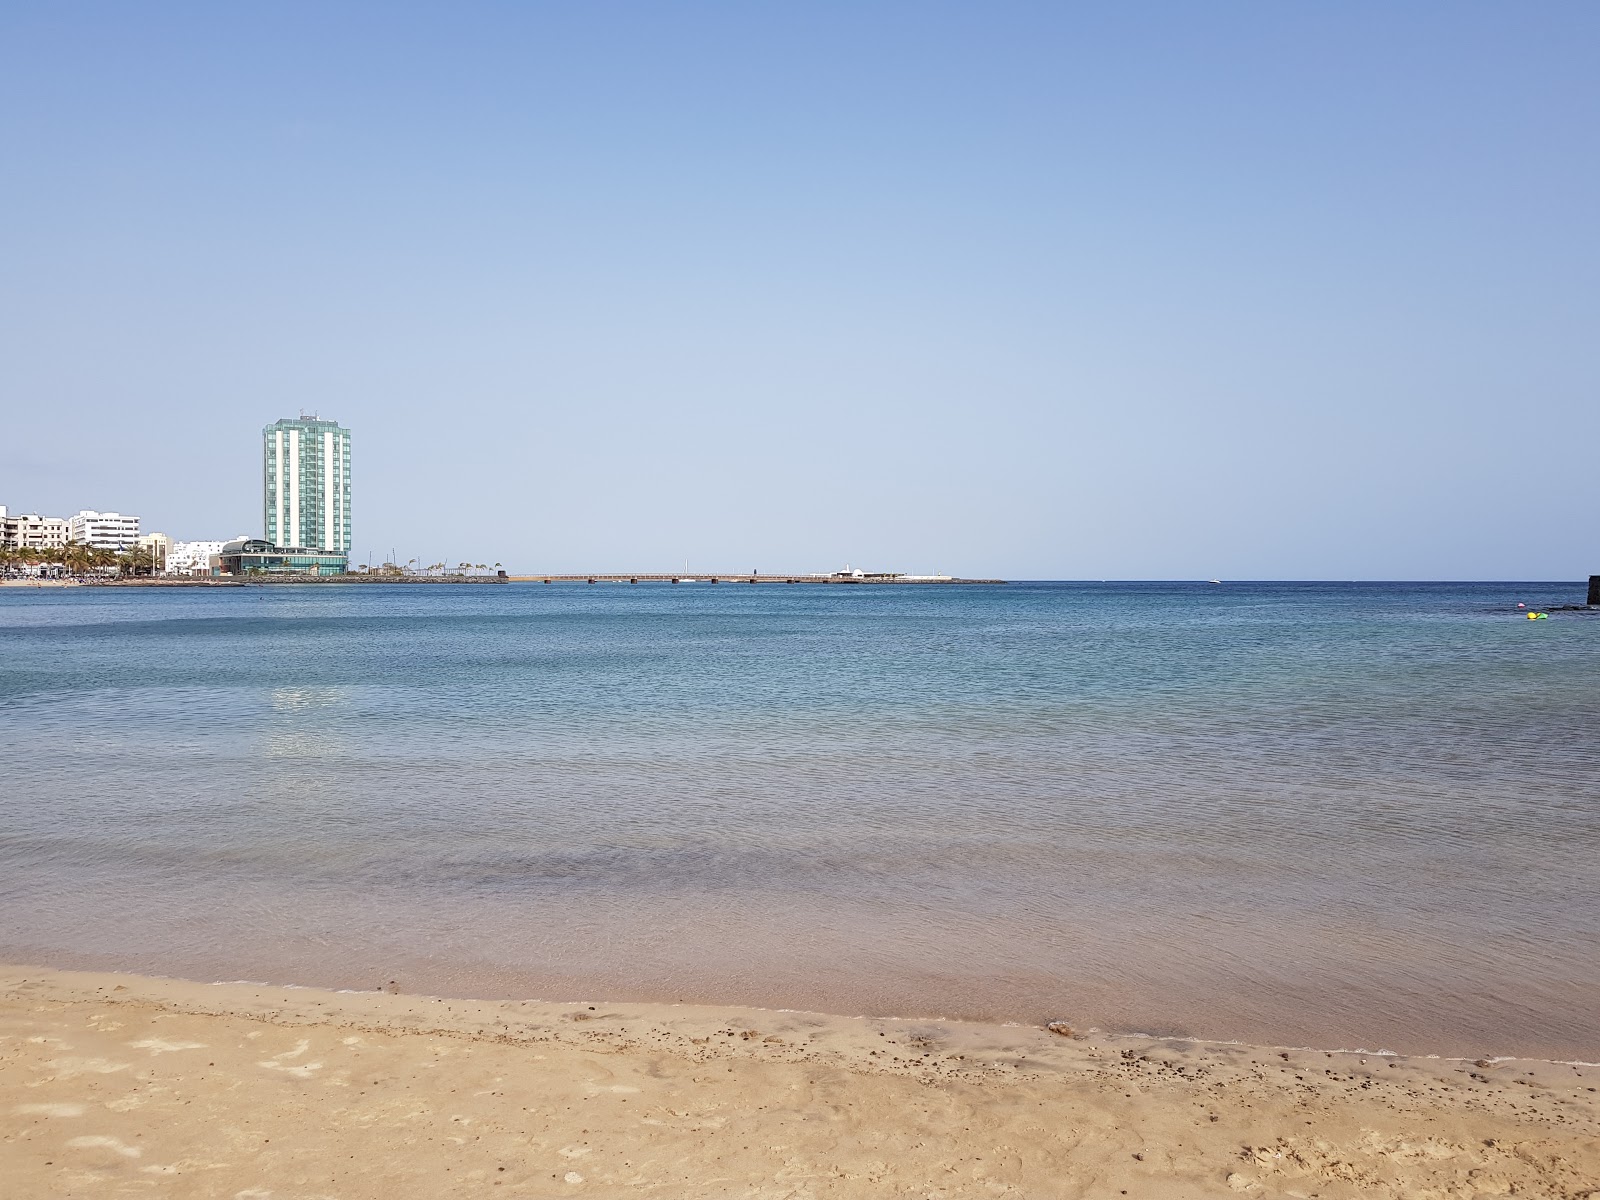 Zdjęcie Plaża Reducto - popularne miejsce wśród znawców relaksu